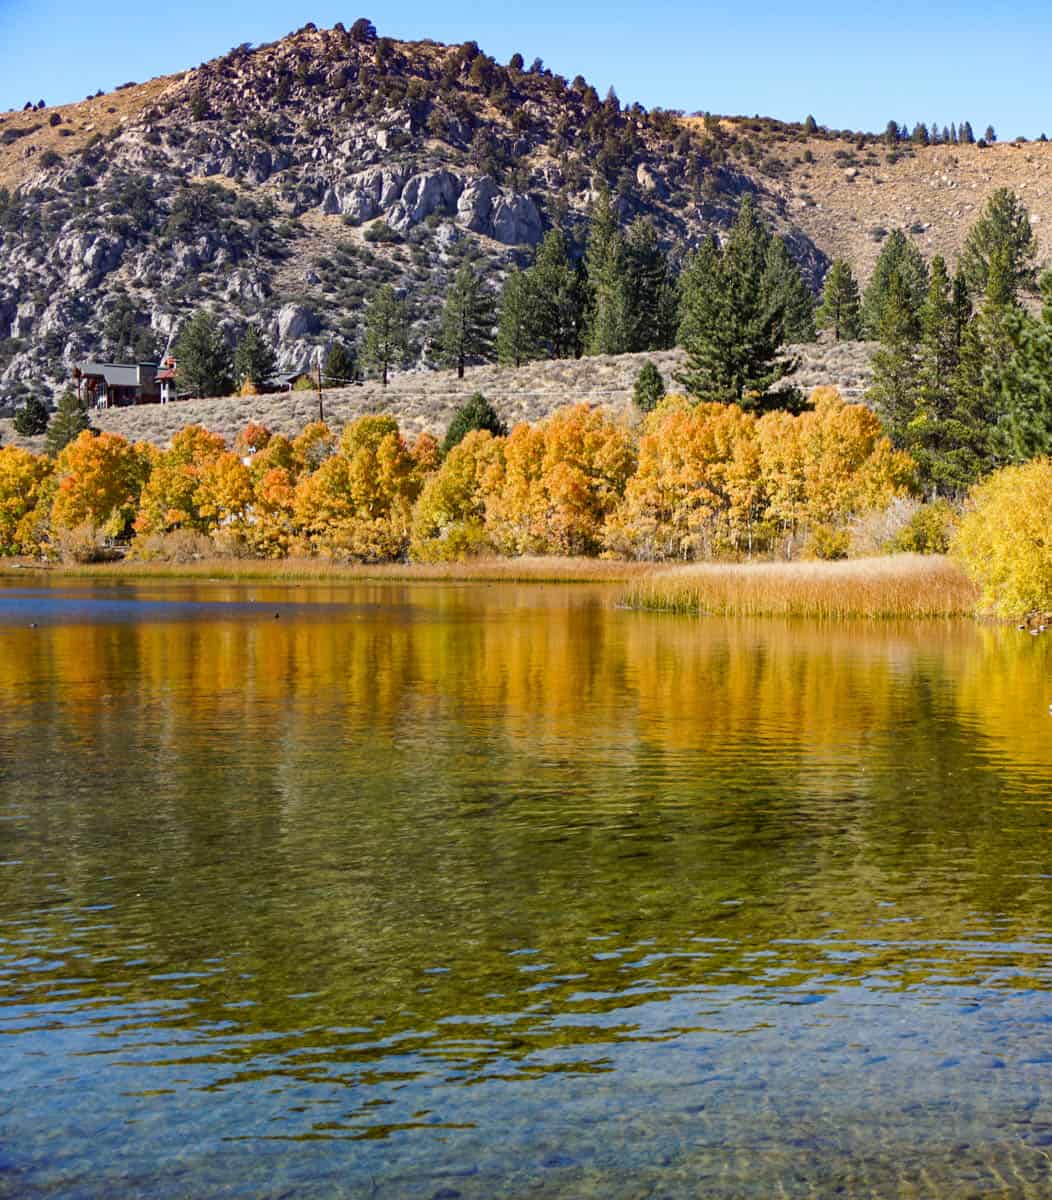 Fall colors at Gull Lake along the June Lake Loop in California